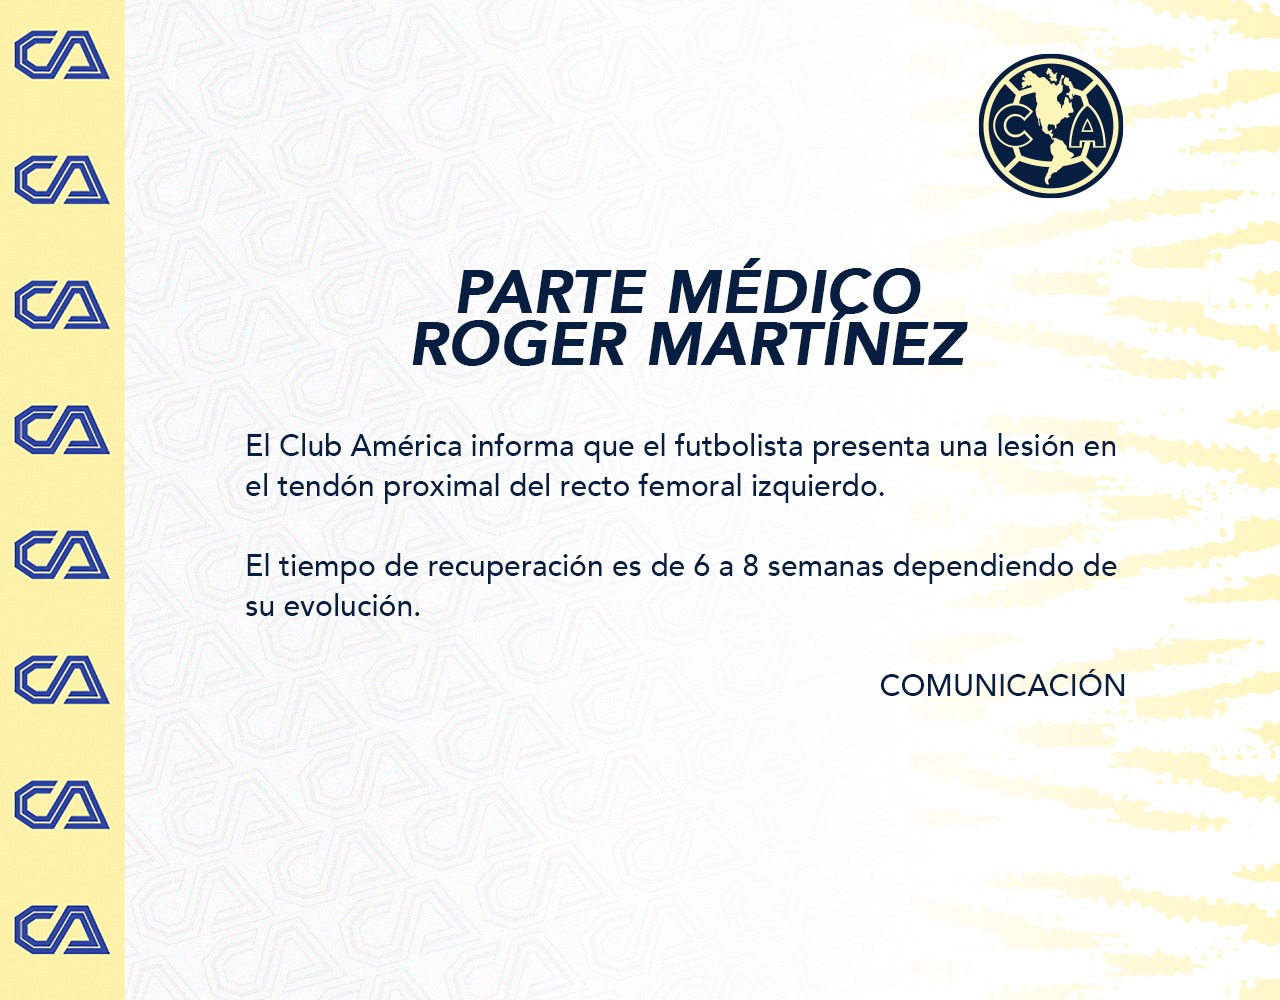 La dirección de comunicación del equipo confirmó el tiempo estimado para la recuperación de Roger Martínez (Foto: Twitter/@ClubAmerica)